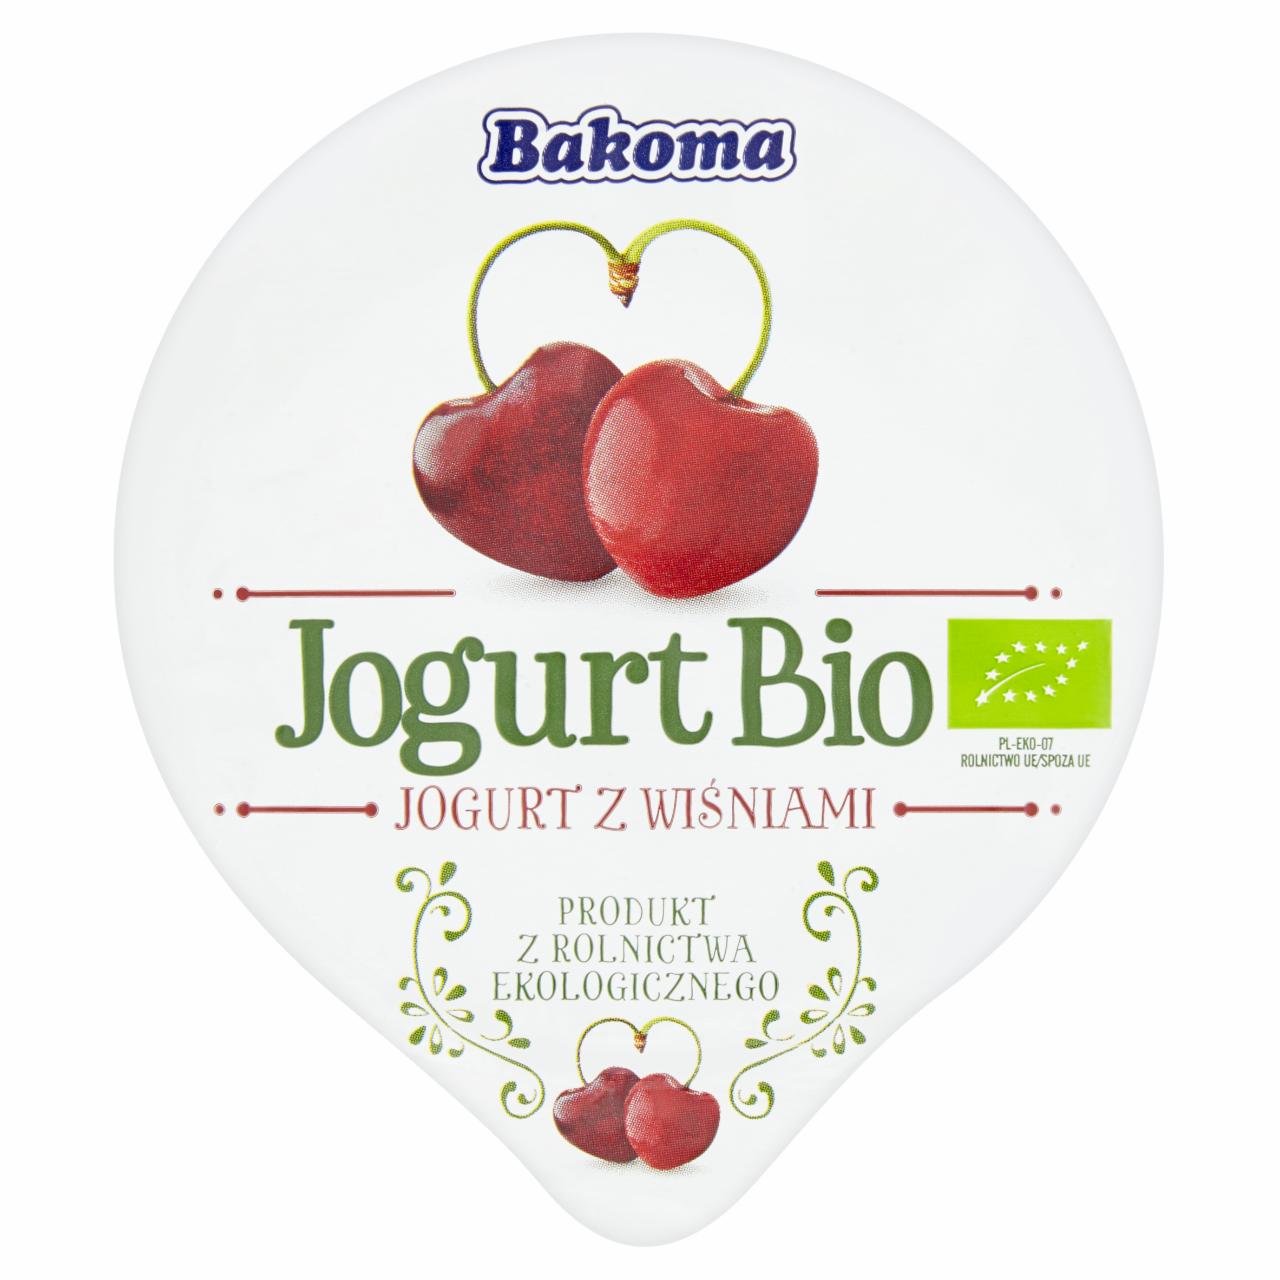 Zdjęcia - Jogurt Bio z wiśniami 140 g Bakoma